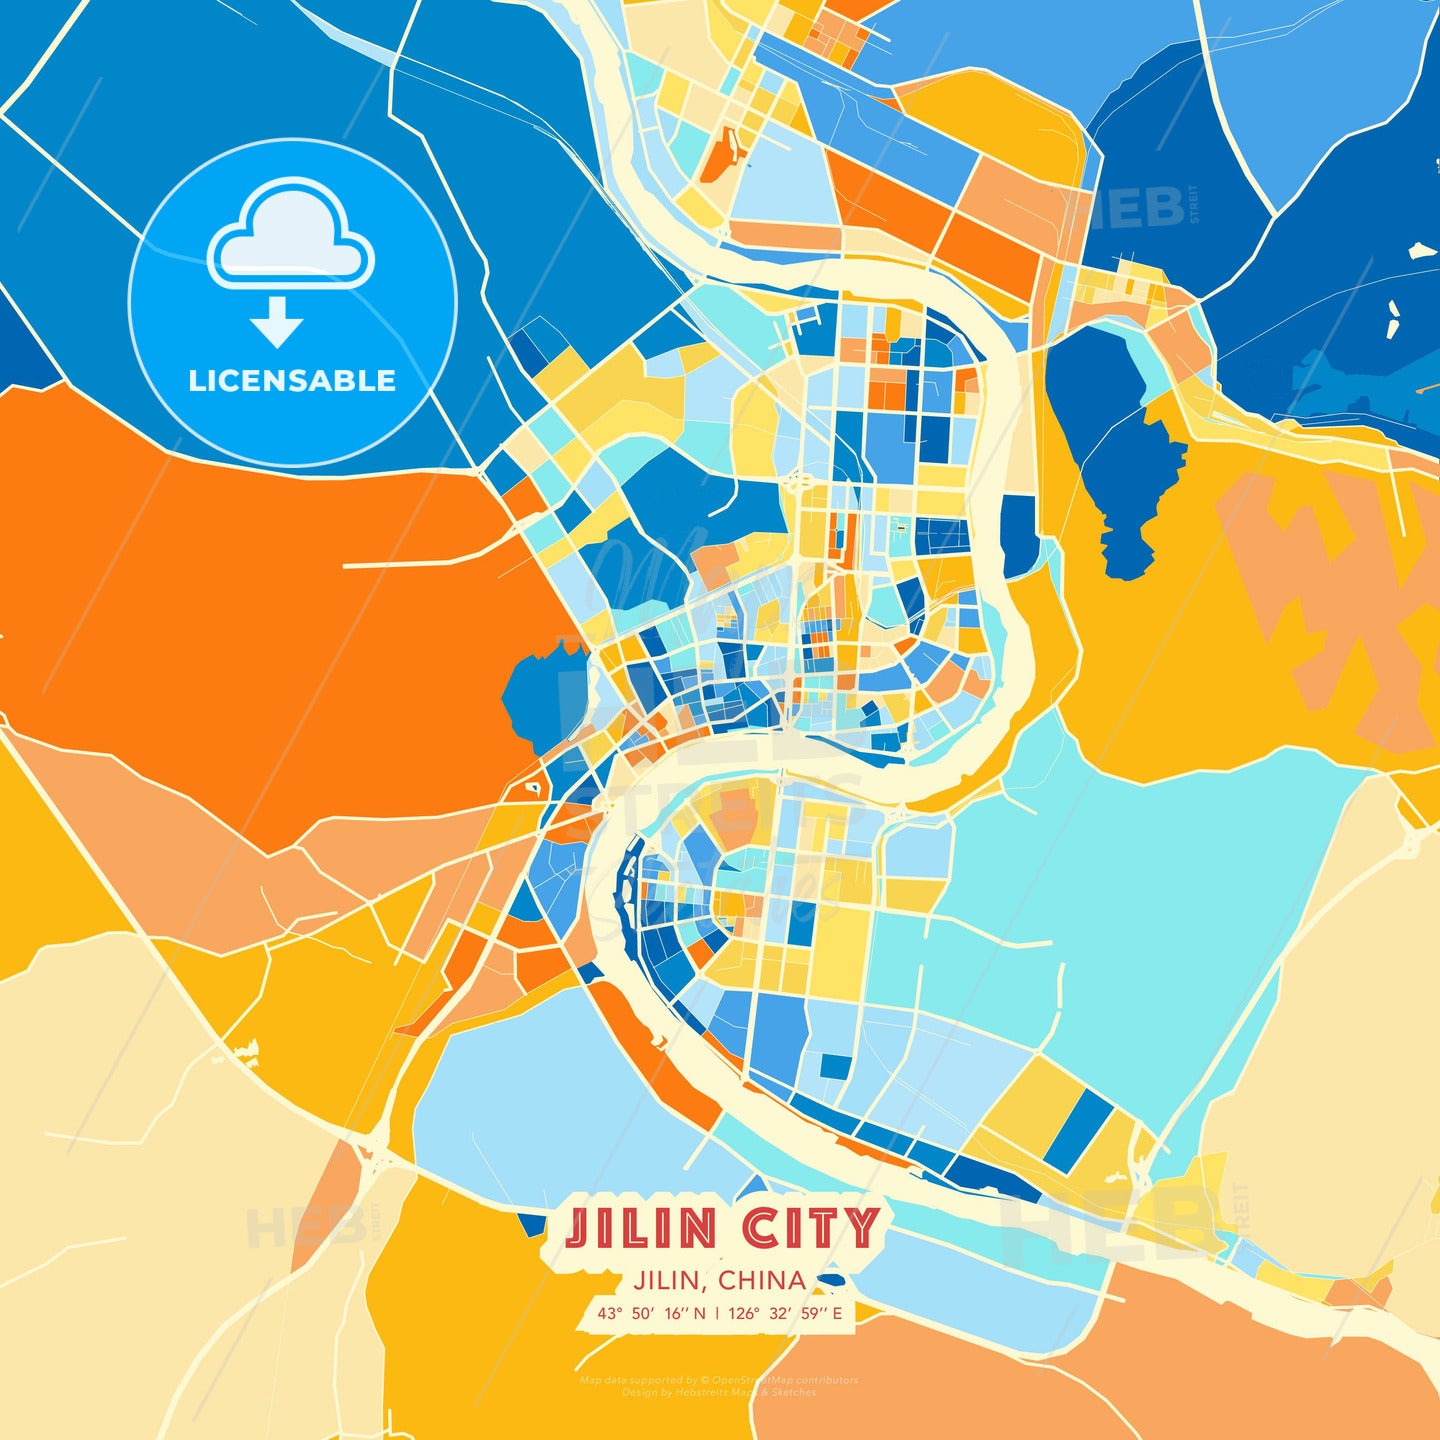 Jilin City, Jilin, China, map - HEBSTREITS Sketches